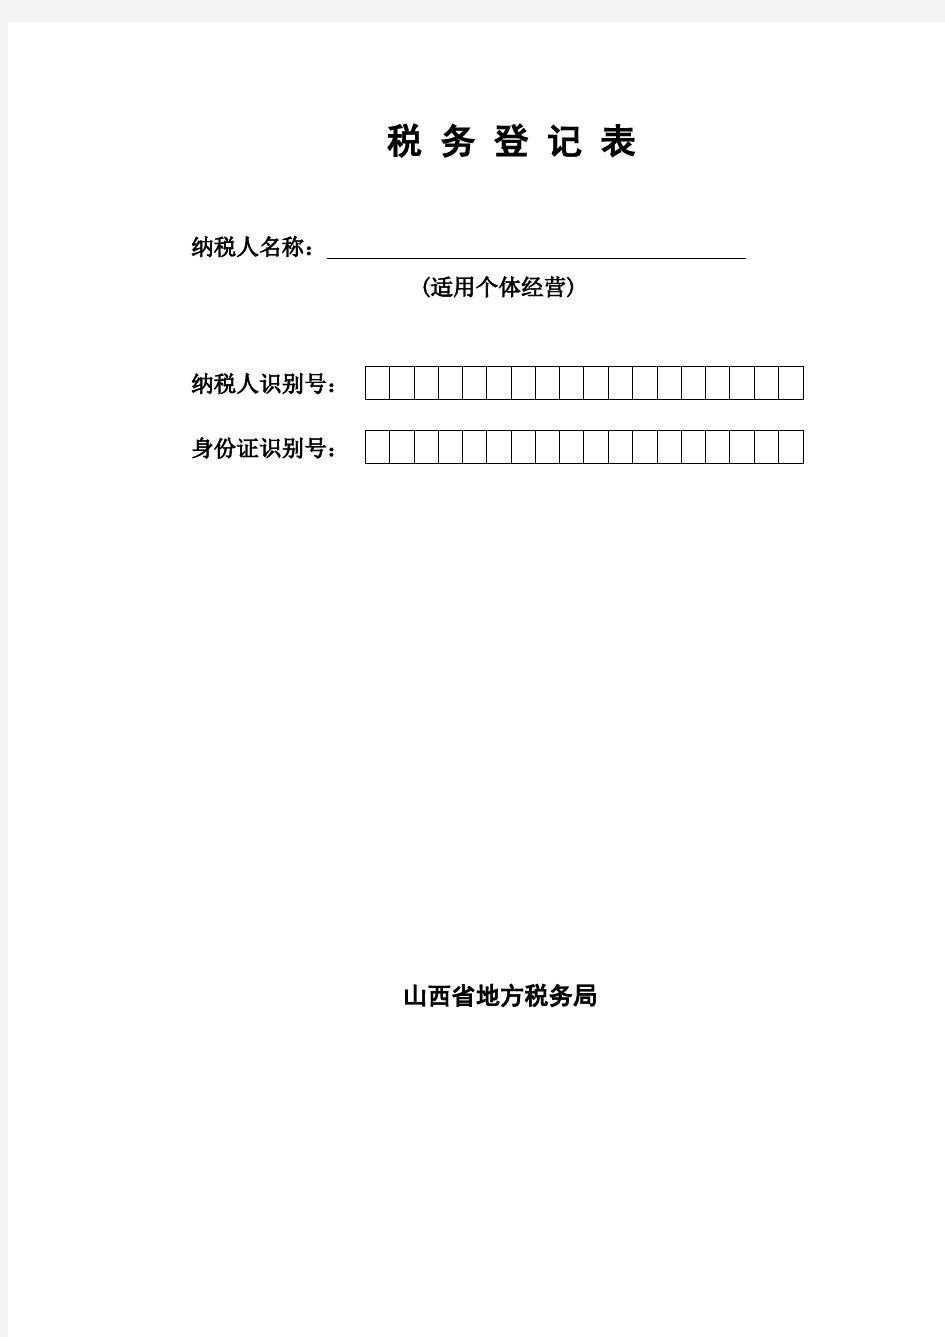 税 务 登 记 表 - 山西省地方税务局